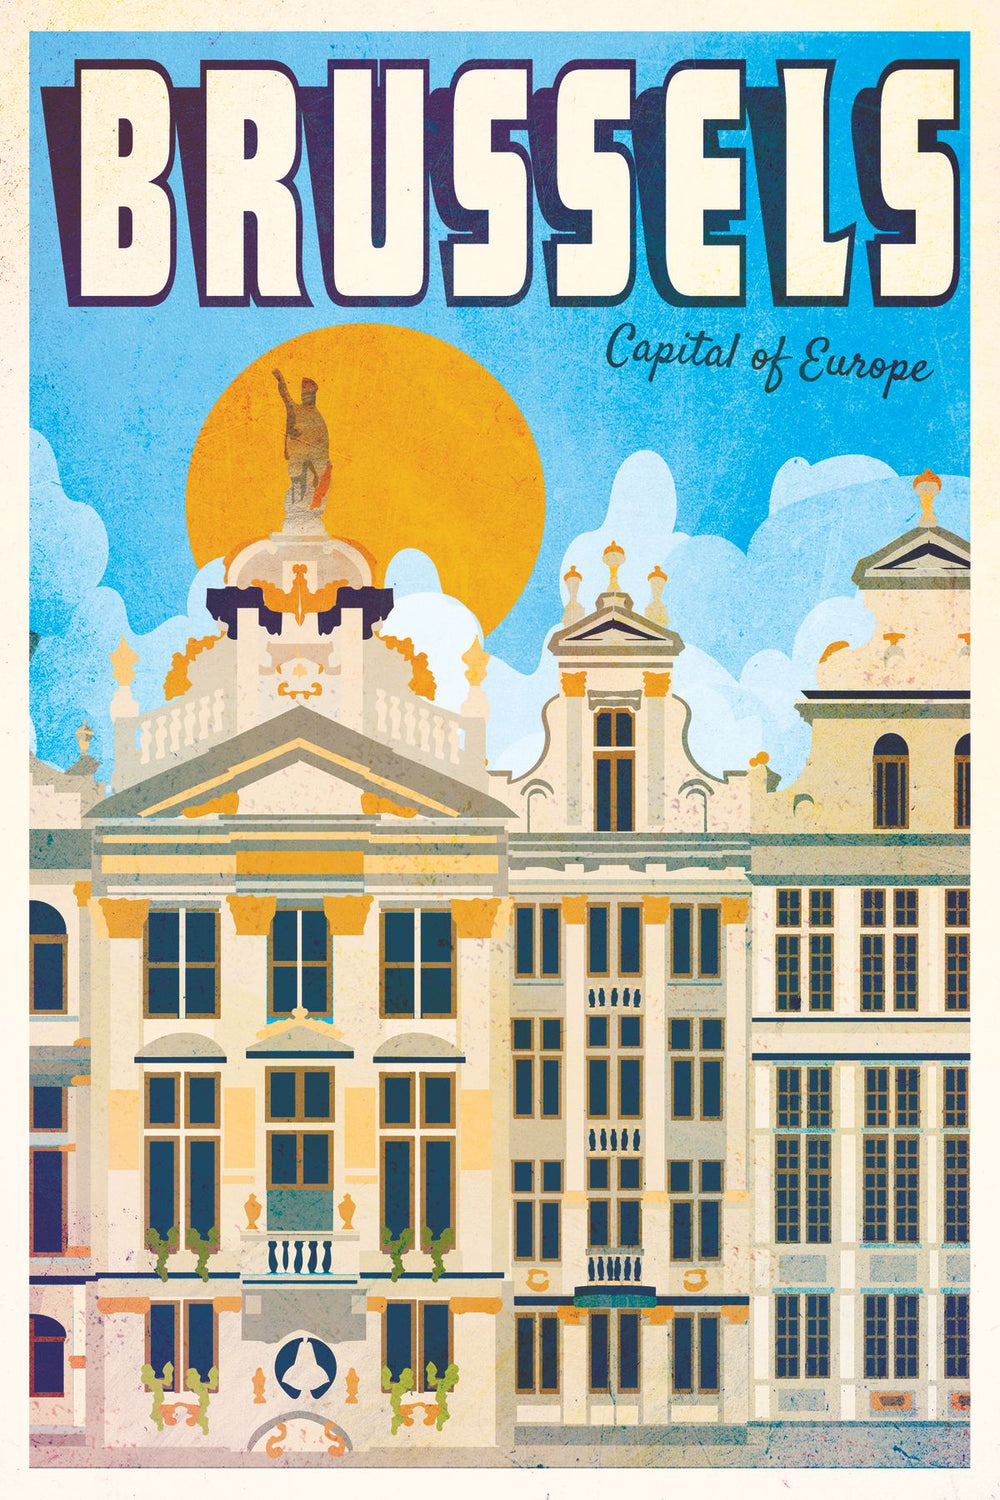 Brussels Tourism Vintage Poster